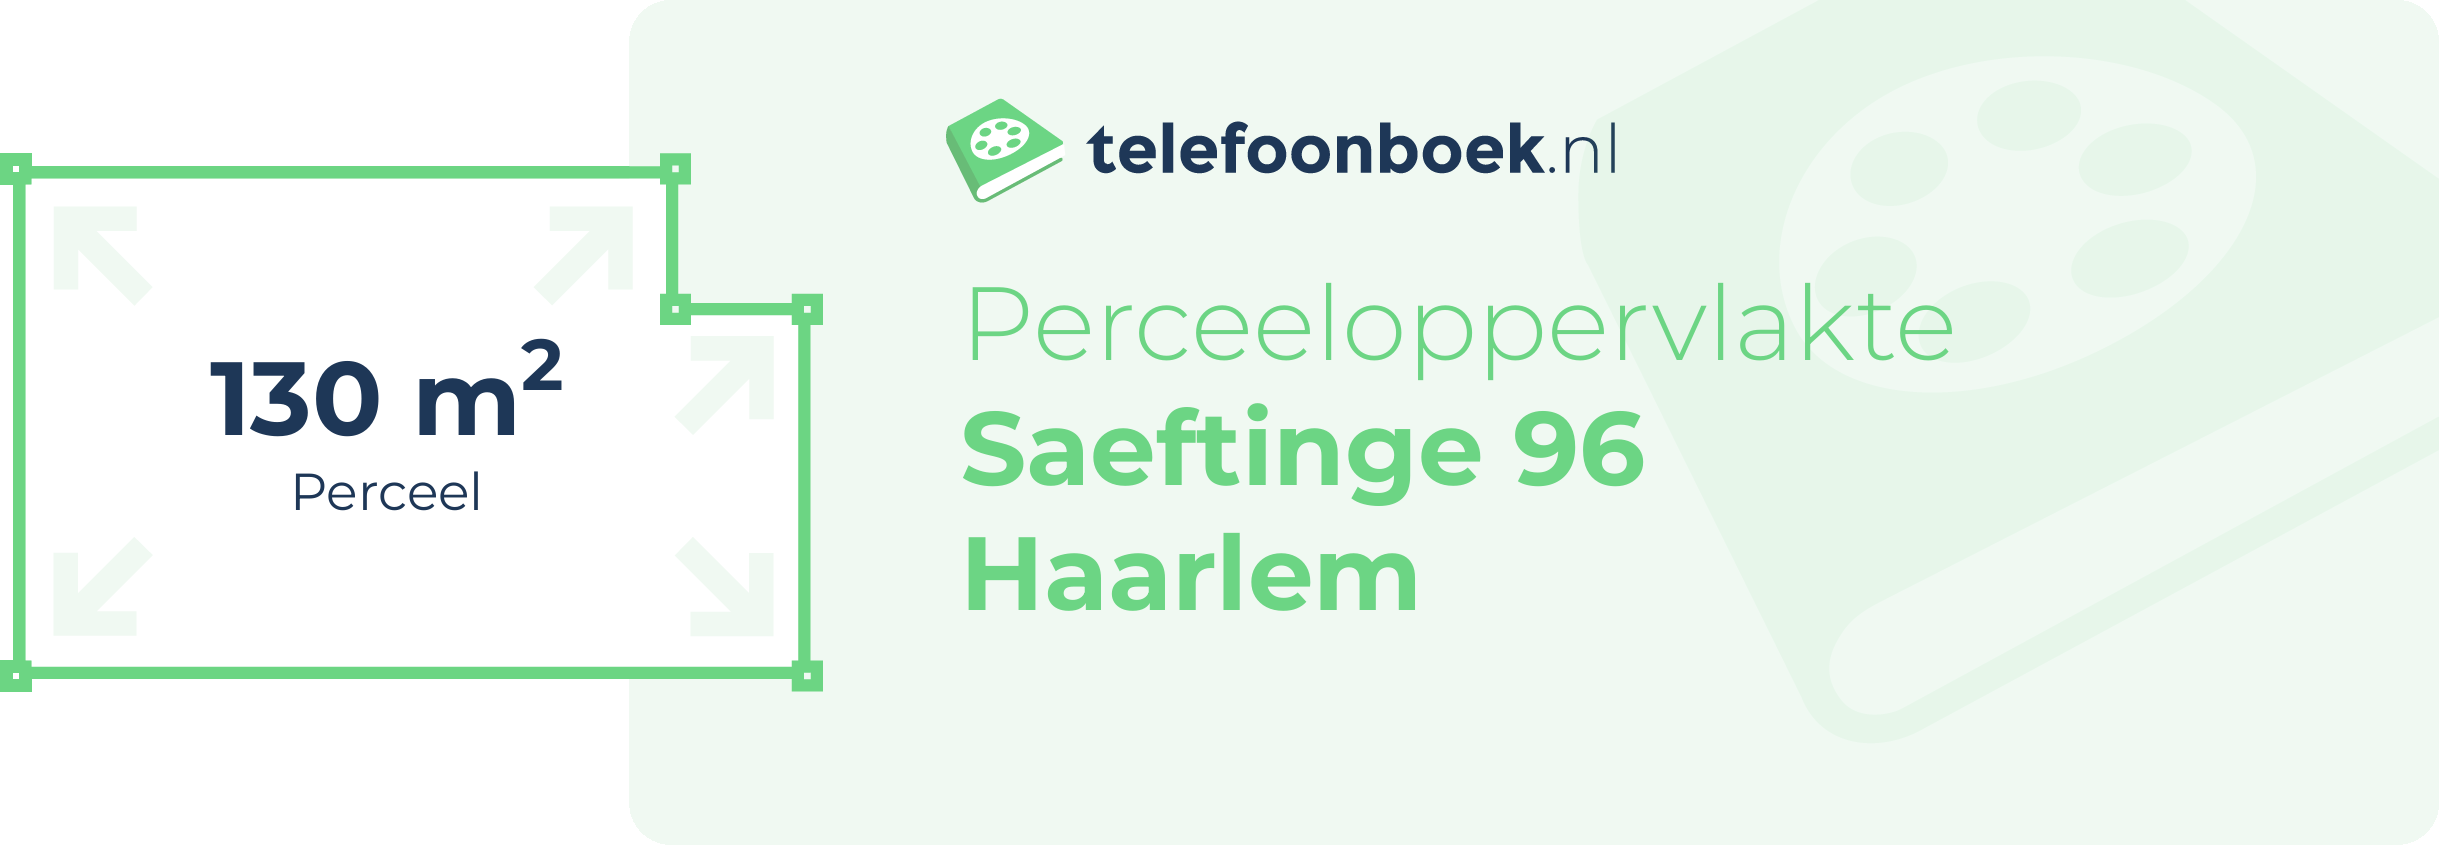 Perceeloppervlakte Saeftinge 96 Haarlem